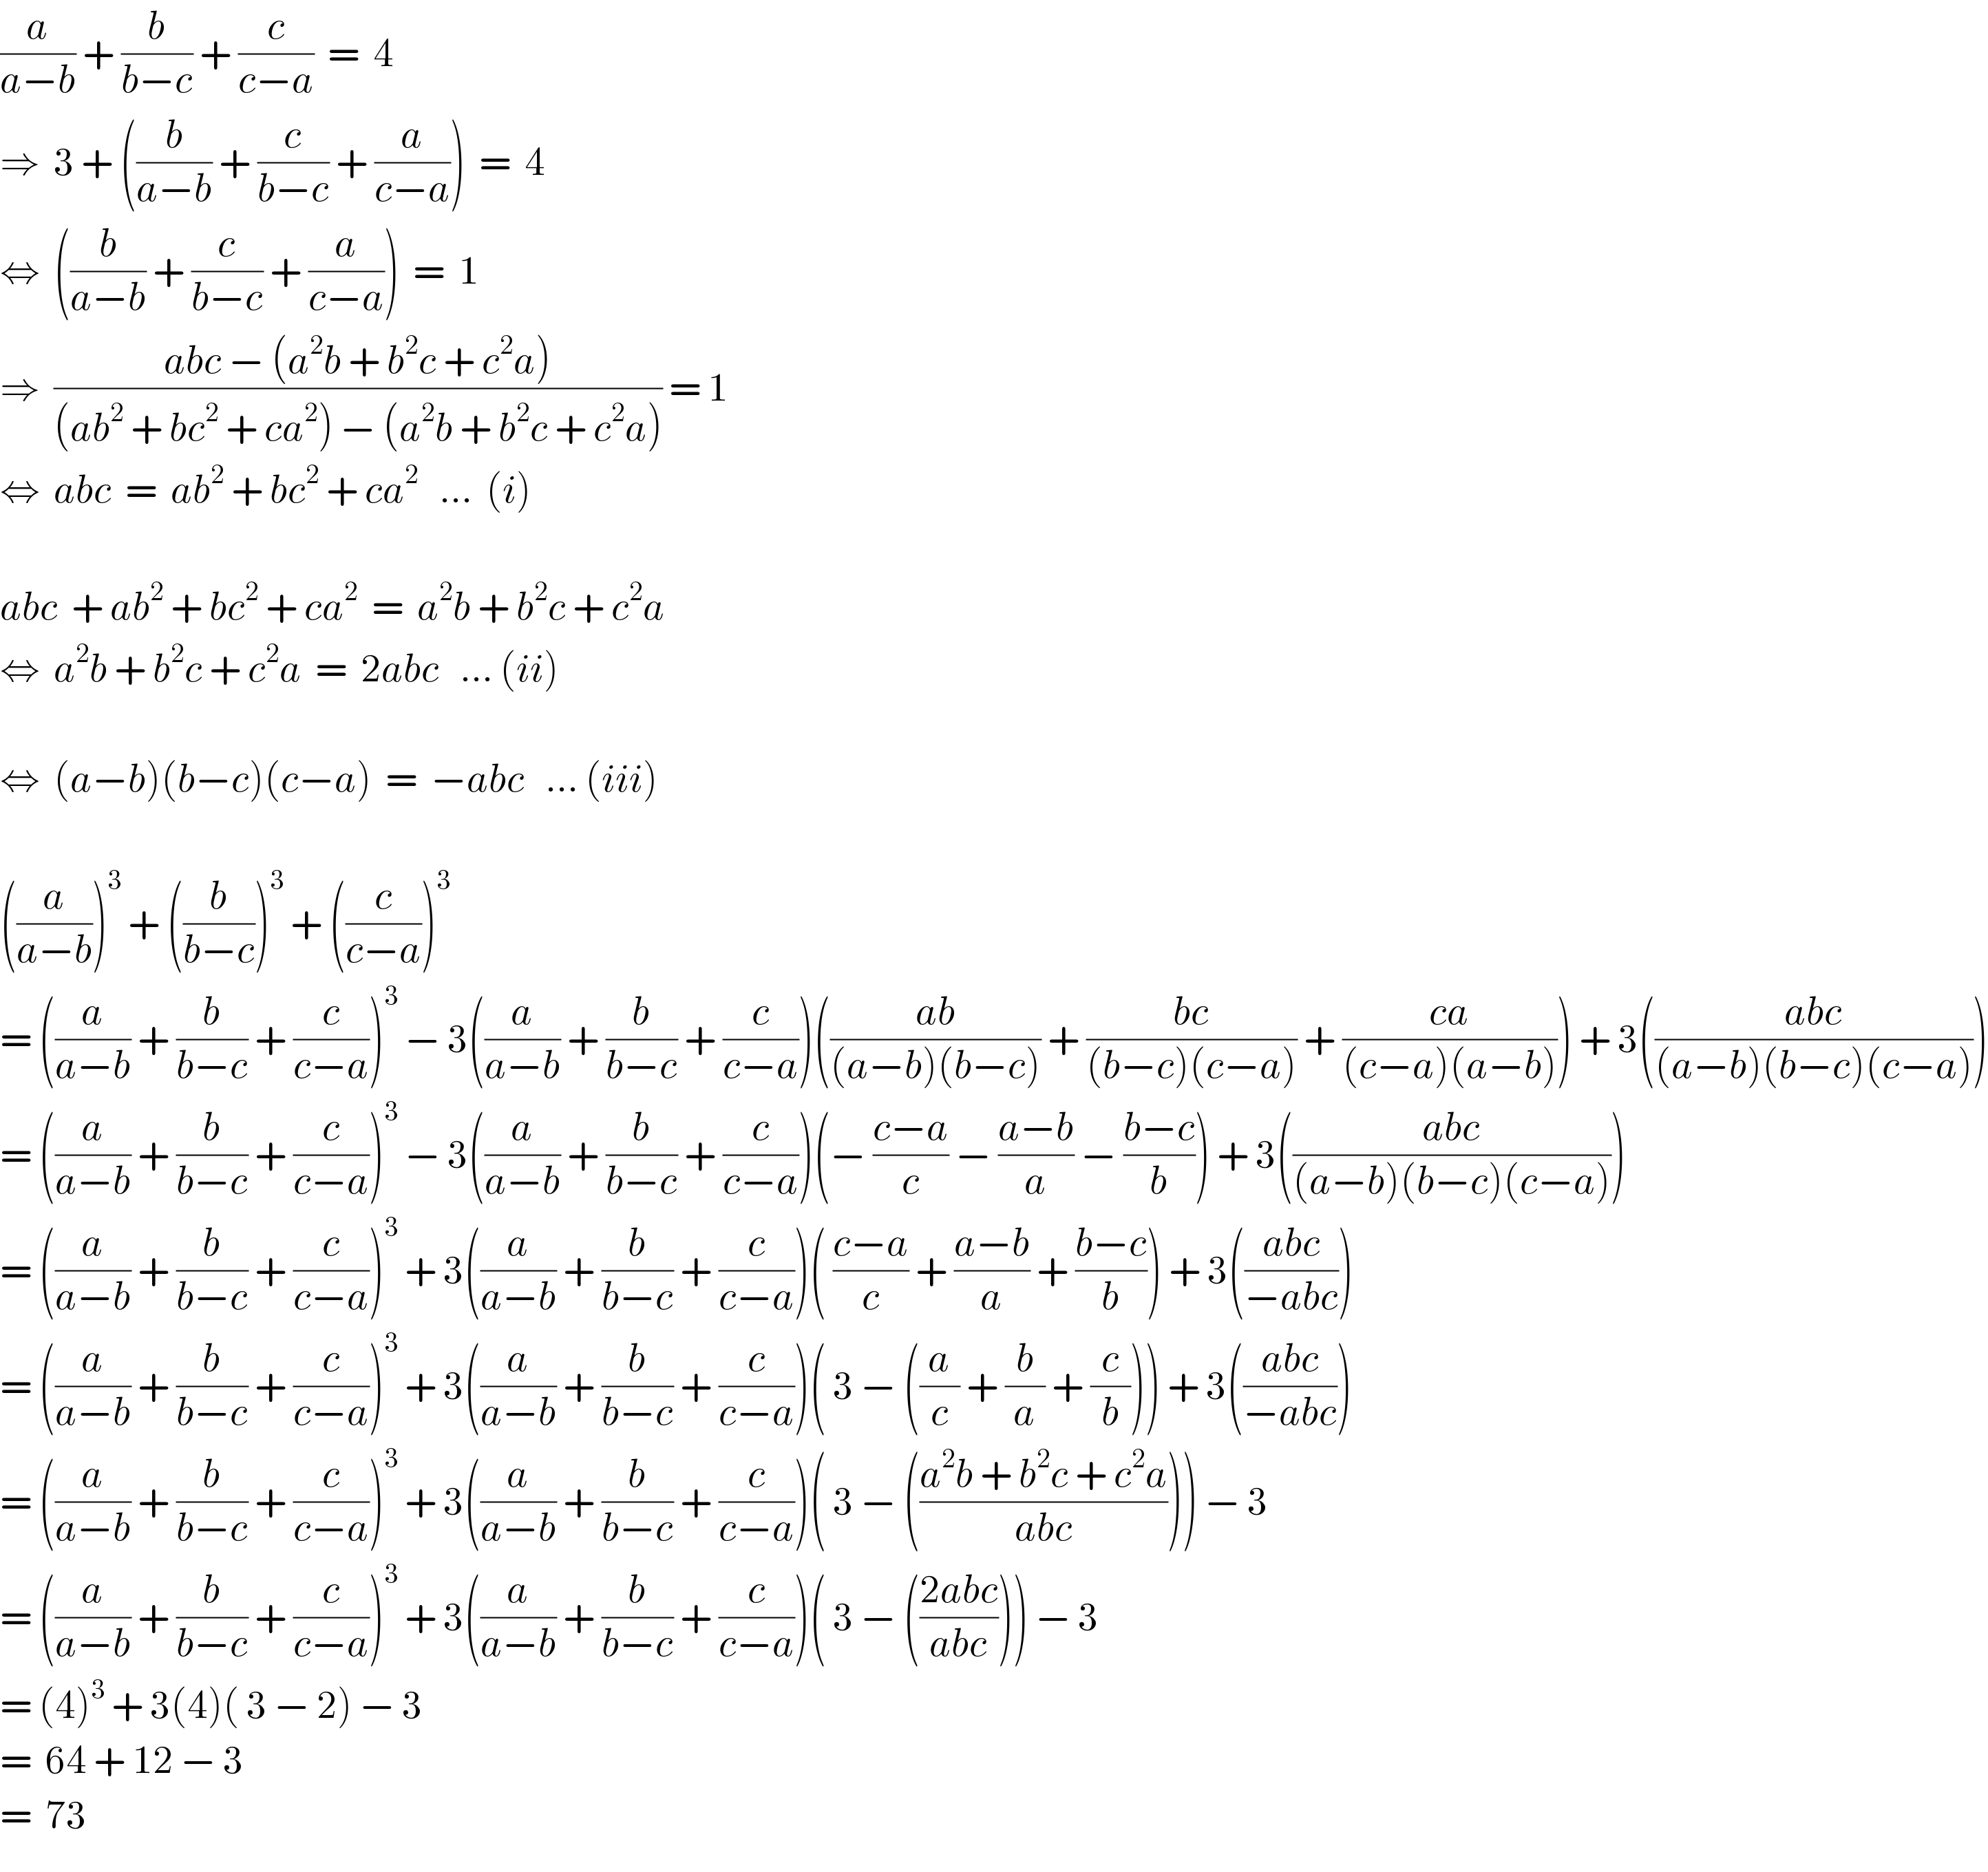 (a/(a−b)) + (b/(b−c)) + (c/(c−a))  =  4  ⇒  3 + ((b/(a−b)) + (c/(b−c)) + (a/(c−a)))  =  4  ⇔  ((b/(a−b)) + (c/(b−c)) + (a/(c−a)))  =  1  ⇒  ((abc − (a^2 b + b^2 c + c^2 a))/((ab^2  + bc^2  + ca^2 ) − (a^2 b + b^2 c + c^2 a))) = 1  ⇔  abc  =  ab^2  + bc^2  + ca^2    ...  (i)    abc  + ab^2  + bc^2  + ca^2   =  a^2 b + b^2 c + c^2 a  ⇔  a^2 b + b^2 c + c^2 a  =  2abc   ... (ii)    ⇔  (a−b)(b−c)(c−a)  =  −abc   ... (iii)    ((a/(a−b)))^3  + ((b/(b−c)))^3  + ((c/(c−a)))^3    = ((a/(a−b)) + (b/(b−c)) + (c/(c−a)))^3  − 3((a/(a−b)) + (b/(b−c)) + (c/(c−a)))(((ab)/((a−b)(b−c))) + ((bc)/((b−c)(c−a))) + ((ca)/((c−a)(a−b)))) + 3(((abc)/((a−b)(b−c)(c−a))))  = ((a/(a−b)) + (b/(b−c)) + (c/(c−a)))^3  − 3((a/(a−b)) + (b/(b−c)) + (c/(c−a)))(− ((c−a)/c) − ((a−b)/a) − ((b−c)/b)) + 3(((abc)/((a−b)(b−c)(c−a))))  = ((a/(a−b)) + (b/(b−c)) + (c/(c−a)))^3  + 3((a/(a−b)) + (b/(b−c)) + (c/(c−a)))( ((c−a)/c) + ((a−b)/a) + ((b−c)/b)) + 3(((abc)/(−abc)))  = ((a/(a−b)) + (b/(b−c)) + (c/(c−a)))^3  + 3((a/(a−b)) + (b/(b−c)) + (c/(c−a)))( 3 − ((a/c) + (b/a) + (c/b))) + 3(((abc)/(−abc)))  = ((a/(a−b)) + (b/(b−c)) + (c/(c−a)))^3  + 3((a/(a−b)) + (b/(b−c)) + (c/(c−a)))( 3 − (((a^2 b + b^2 c + c^2 a)/(abc)))) − 3  = ((a/(a−b)) + (b/(b−c)) + (c/(c−a)))^3  + 3((a/(a−b)) + (b/(b−c)) + (c/(c−a)))( 3 − (((2abc)/(abc)))) − 3  = (4)^3  + 3(4)( 3 − 2) − 3  =  64 + 12 − 3  =  73  